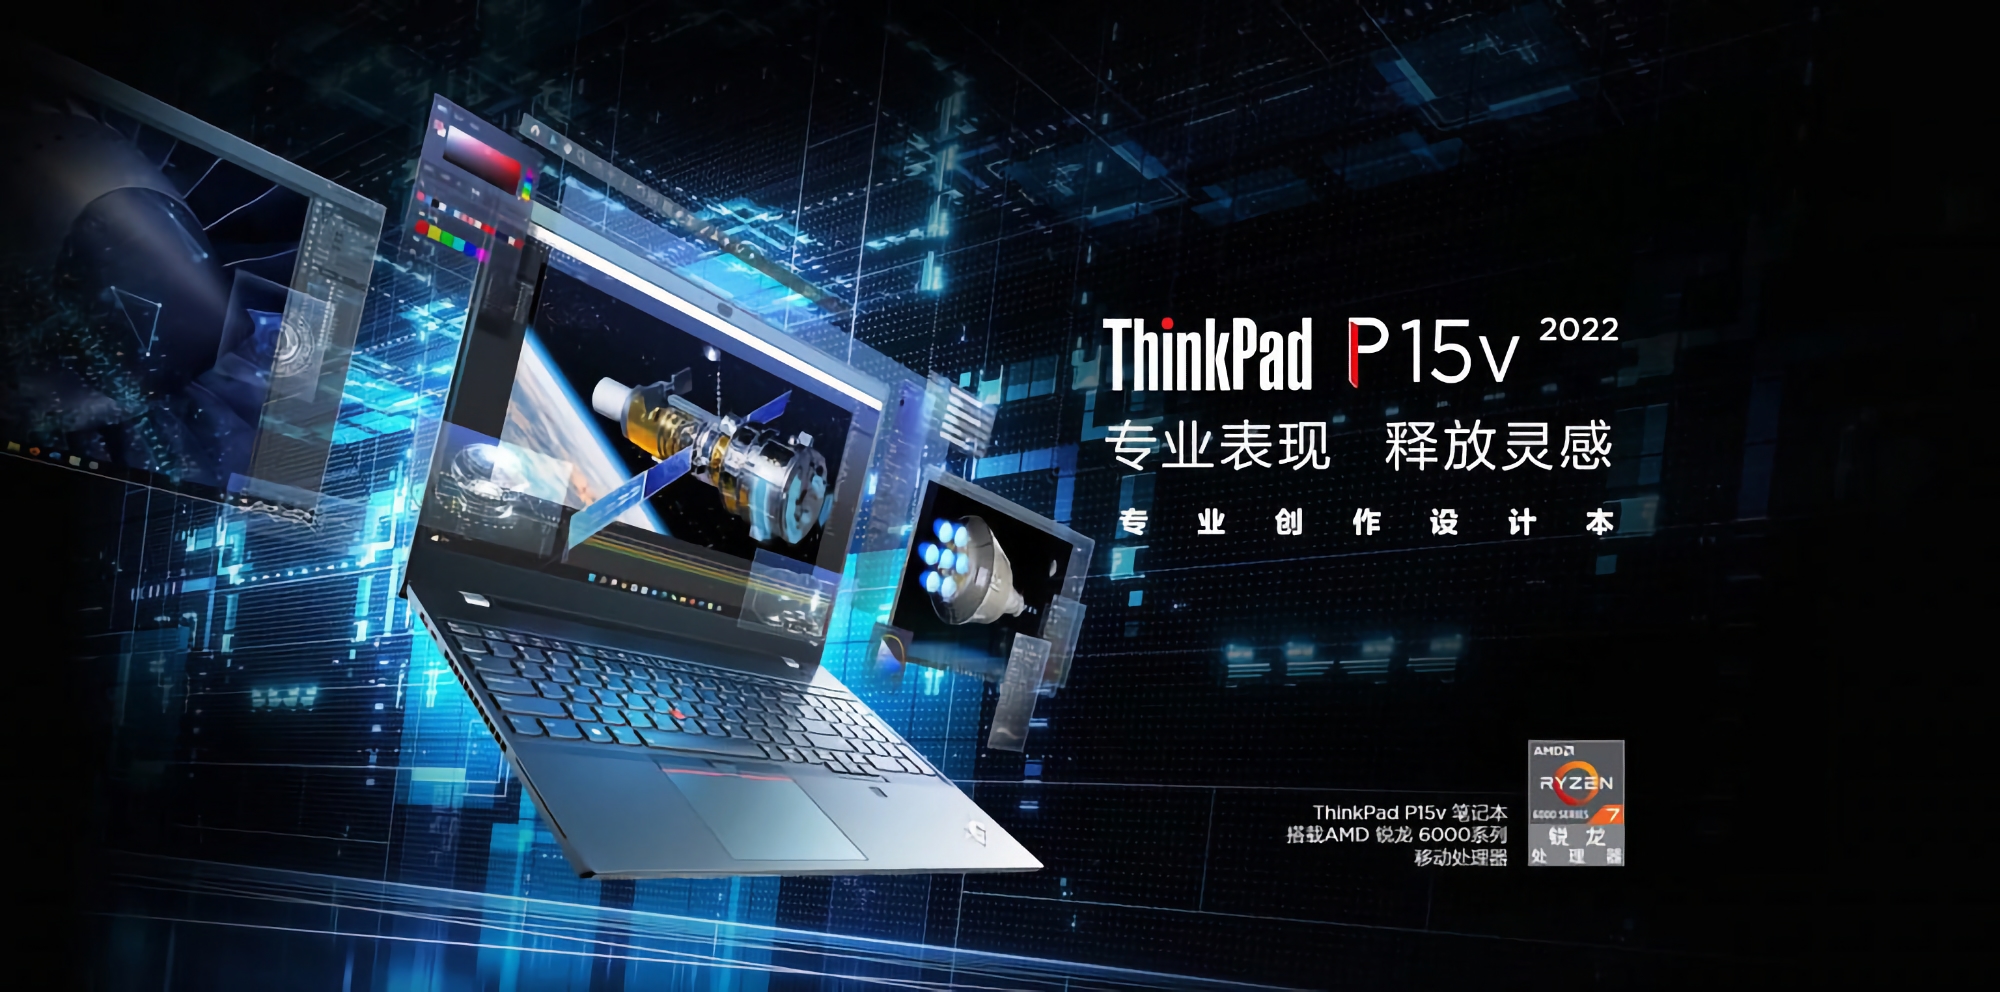 Lenovo ThinkPad P15v 2022 Ryzen Edition: Laptop da 15,6 pollici con processore AMD, fino a 64 GB di RAM e scheda grafica NVIDIA T600 a partire da 1095 dollari.